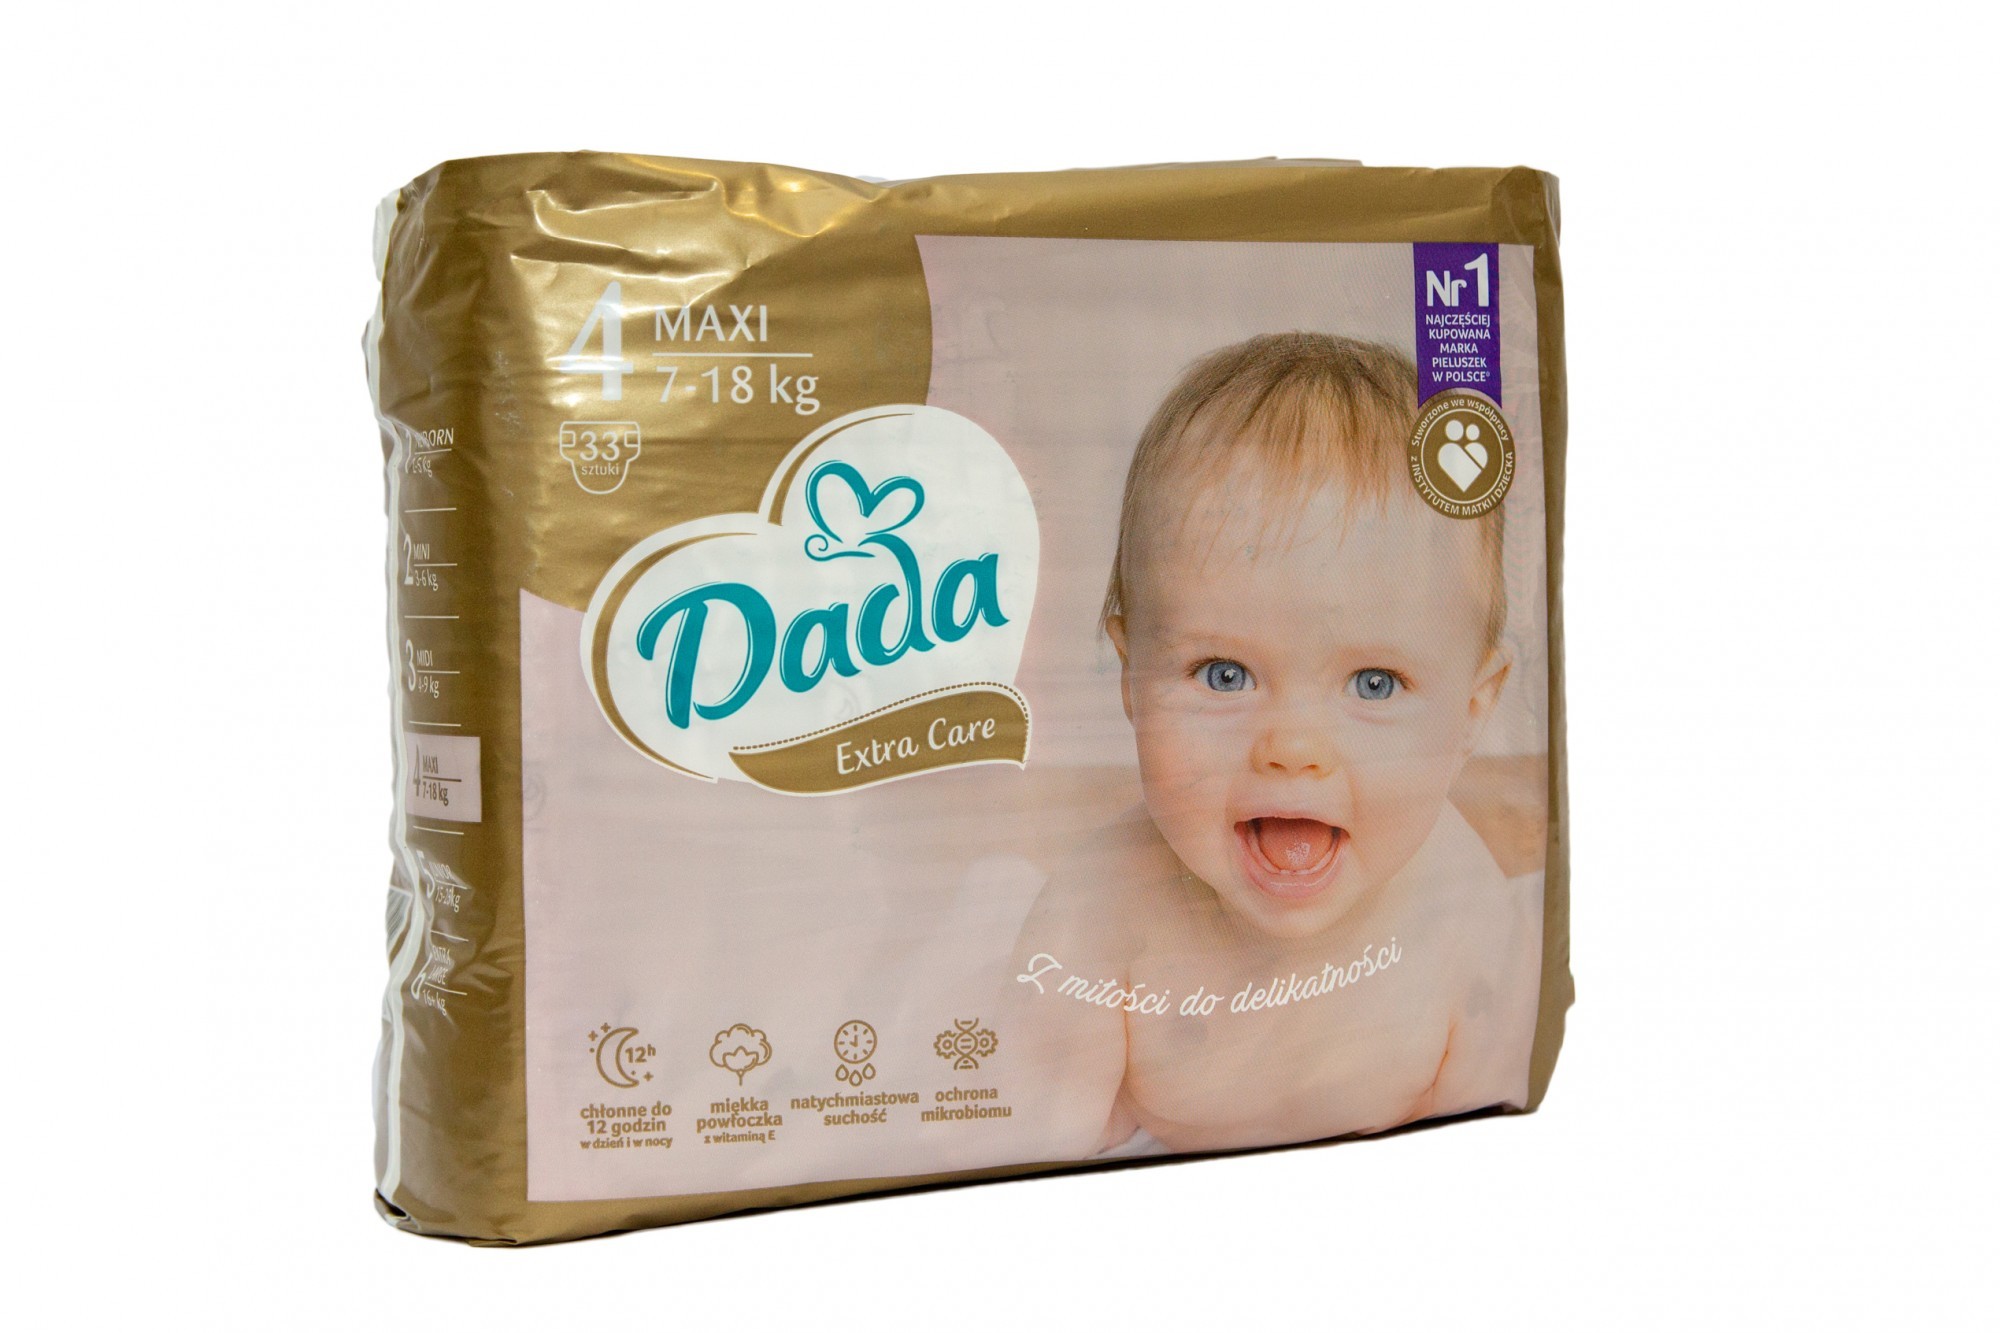 Підгузки Dada Extra Care Розмір 4 Maxi, 7-18 кг, 33 шт